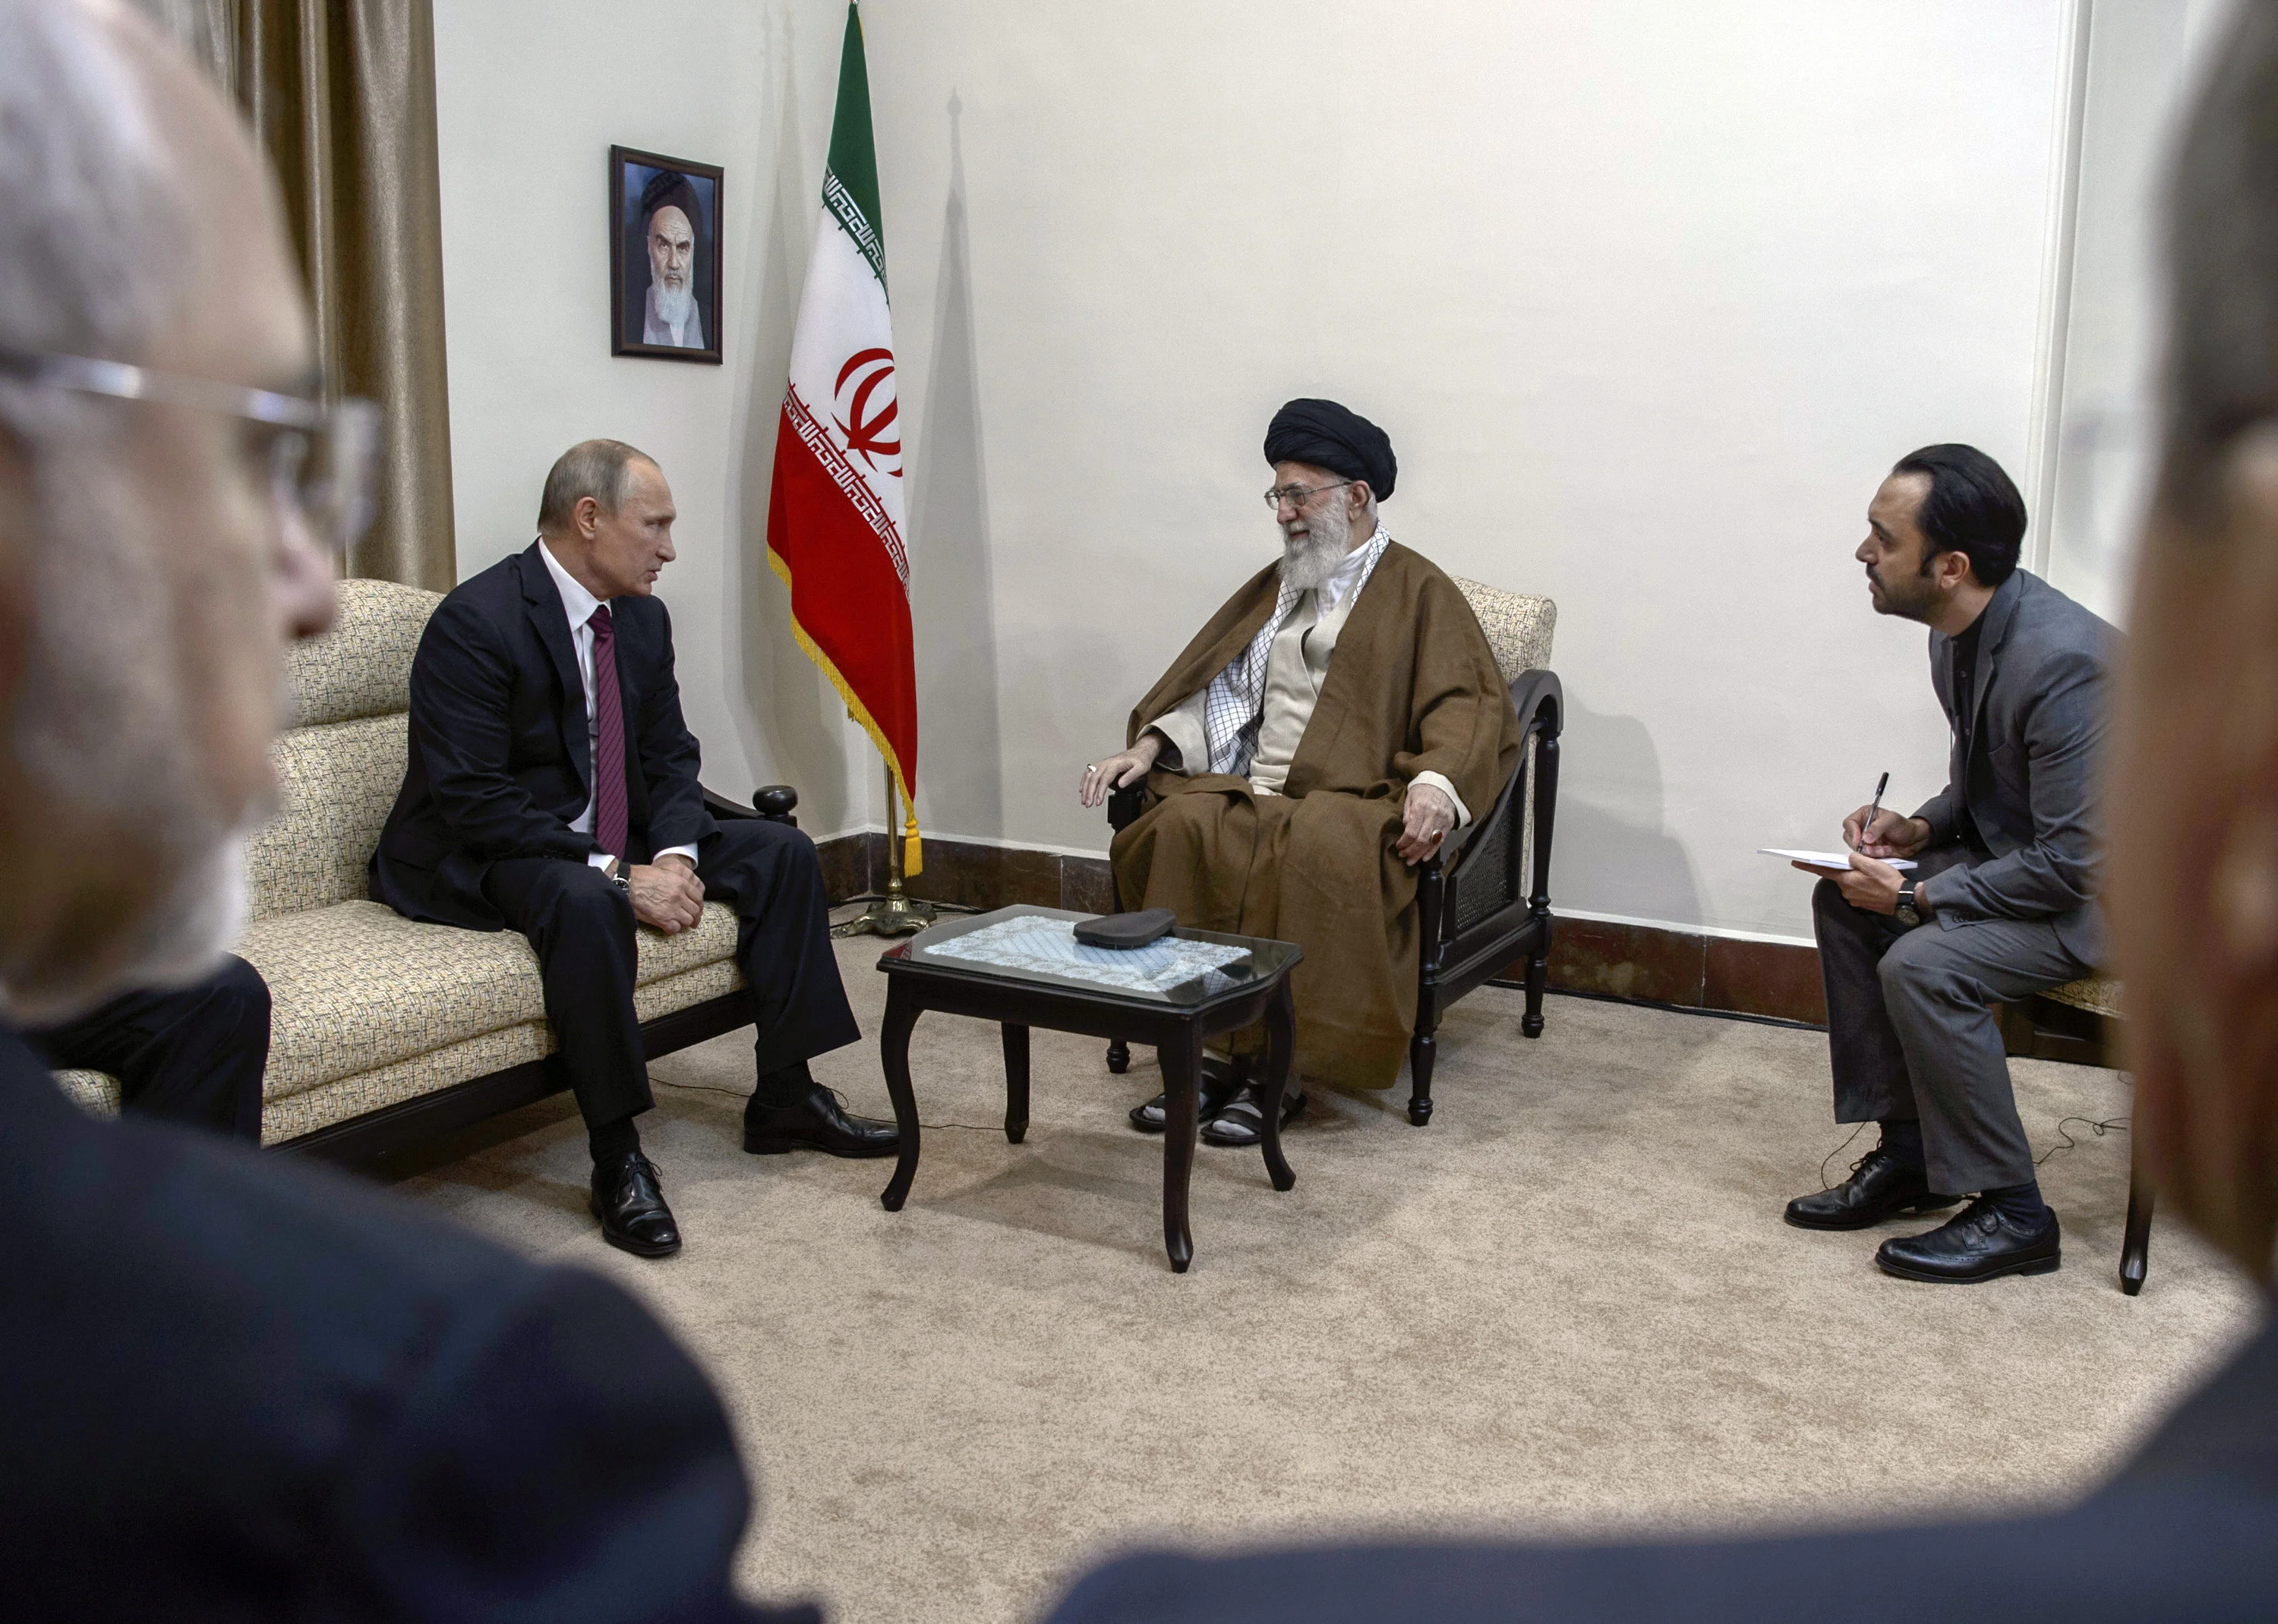 El presidente ruso Vladimir Putin durante un encuentro con el líder supremo iraní, el ayatollah Alí Khamenei en Teherán, Irán, el 1 de noviembre de 2017 (Sputnik/Dmitry Azarov/Pool a través de REUTERS)